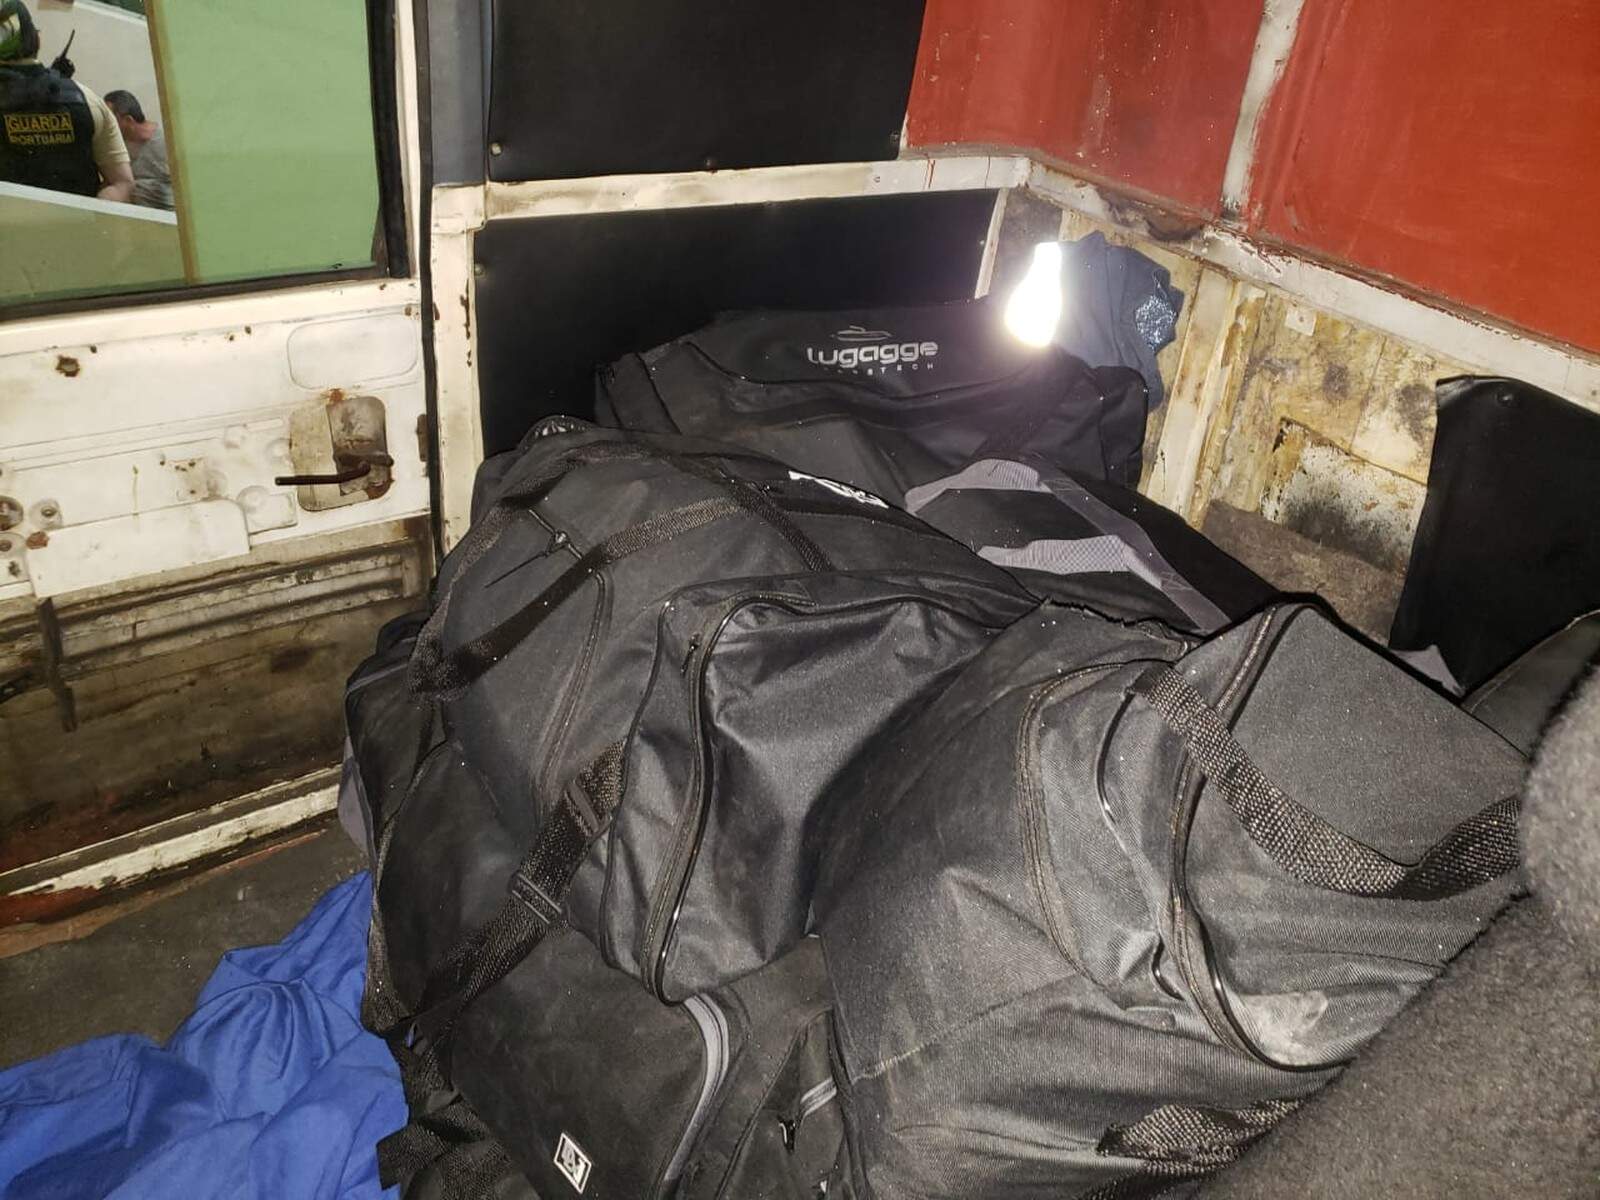 Bolsas com o entorpecente estavam localizadas em cabine do caminhão